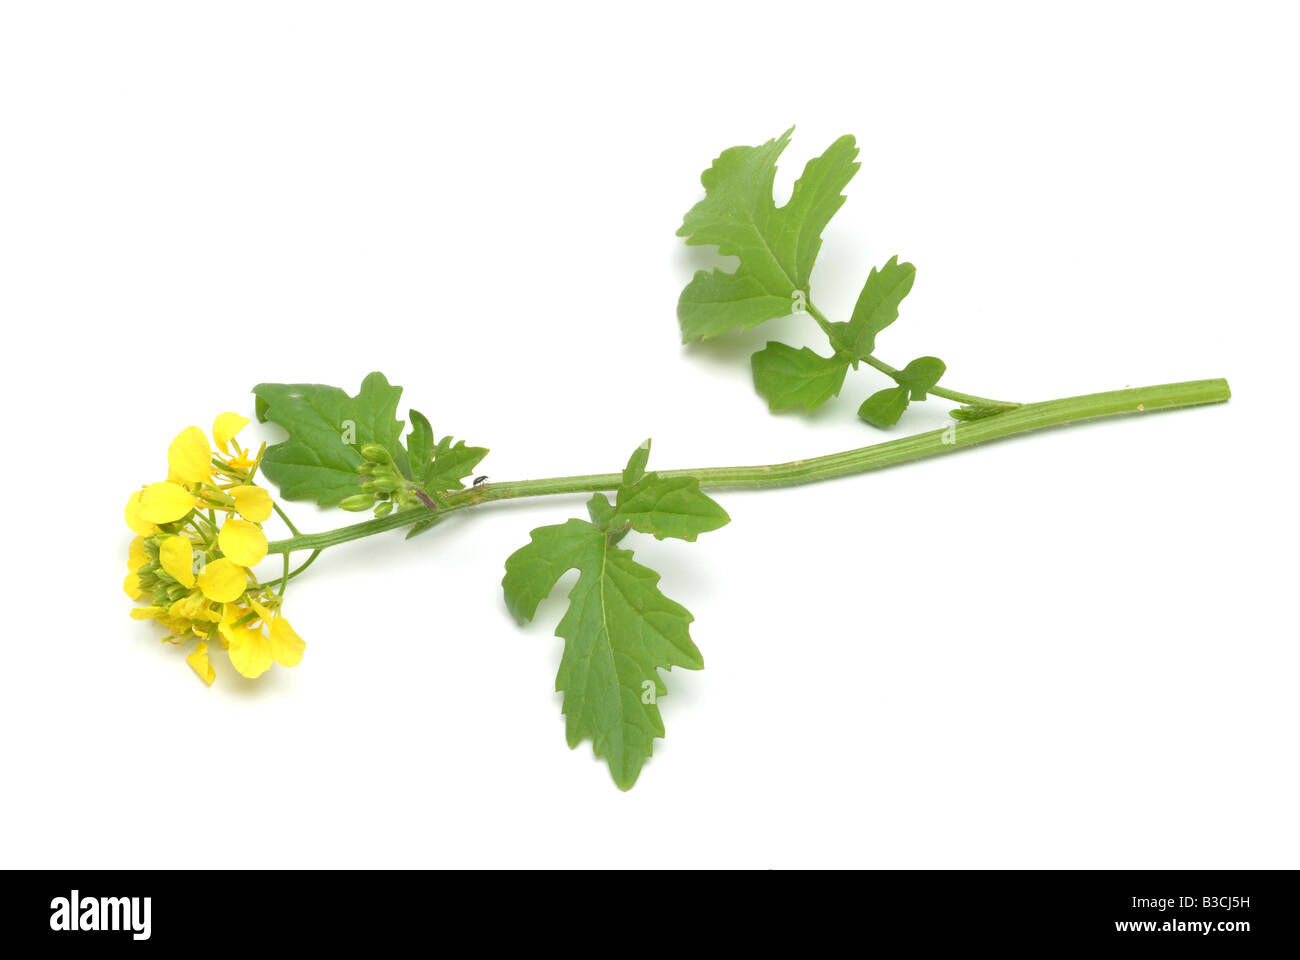 Plante médicinale moutarde jaune moutarde blanche Sinapis alba alba Brasscia Banque D'Images